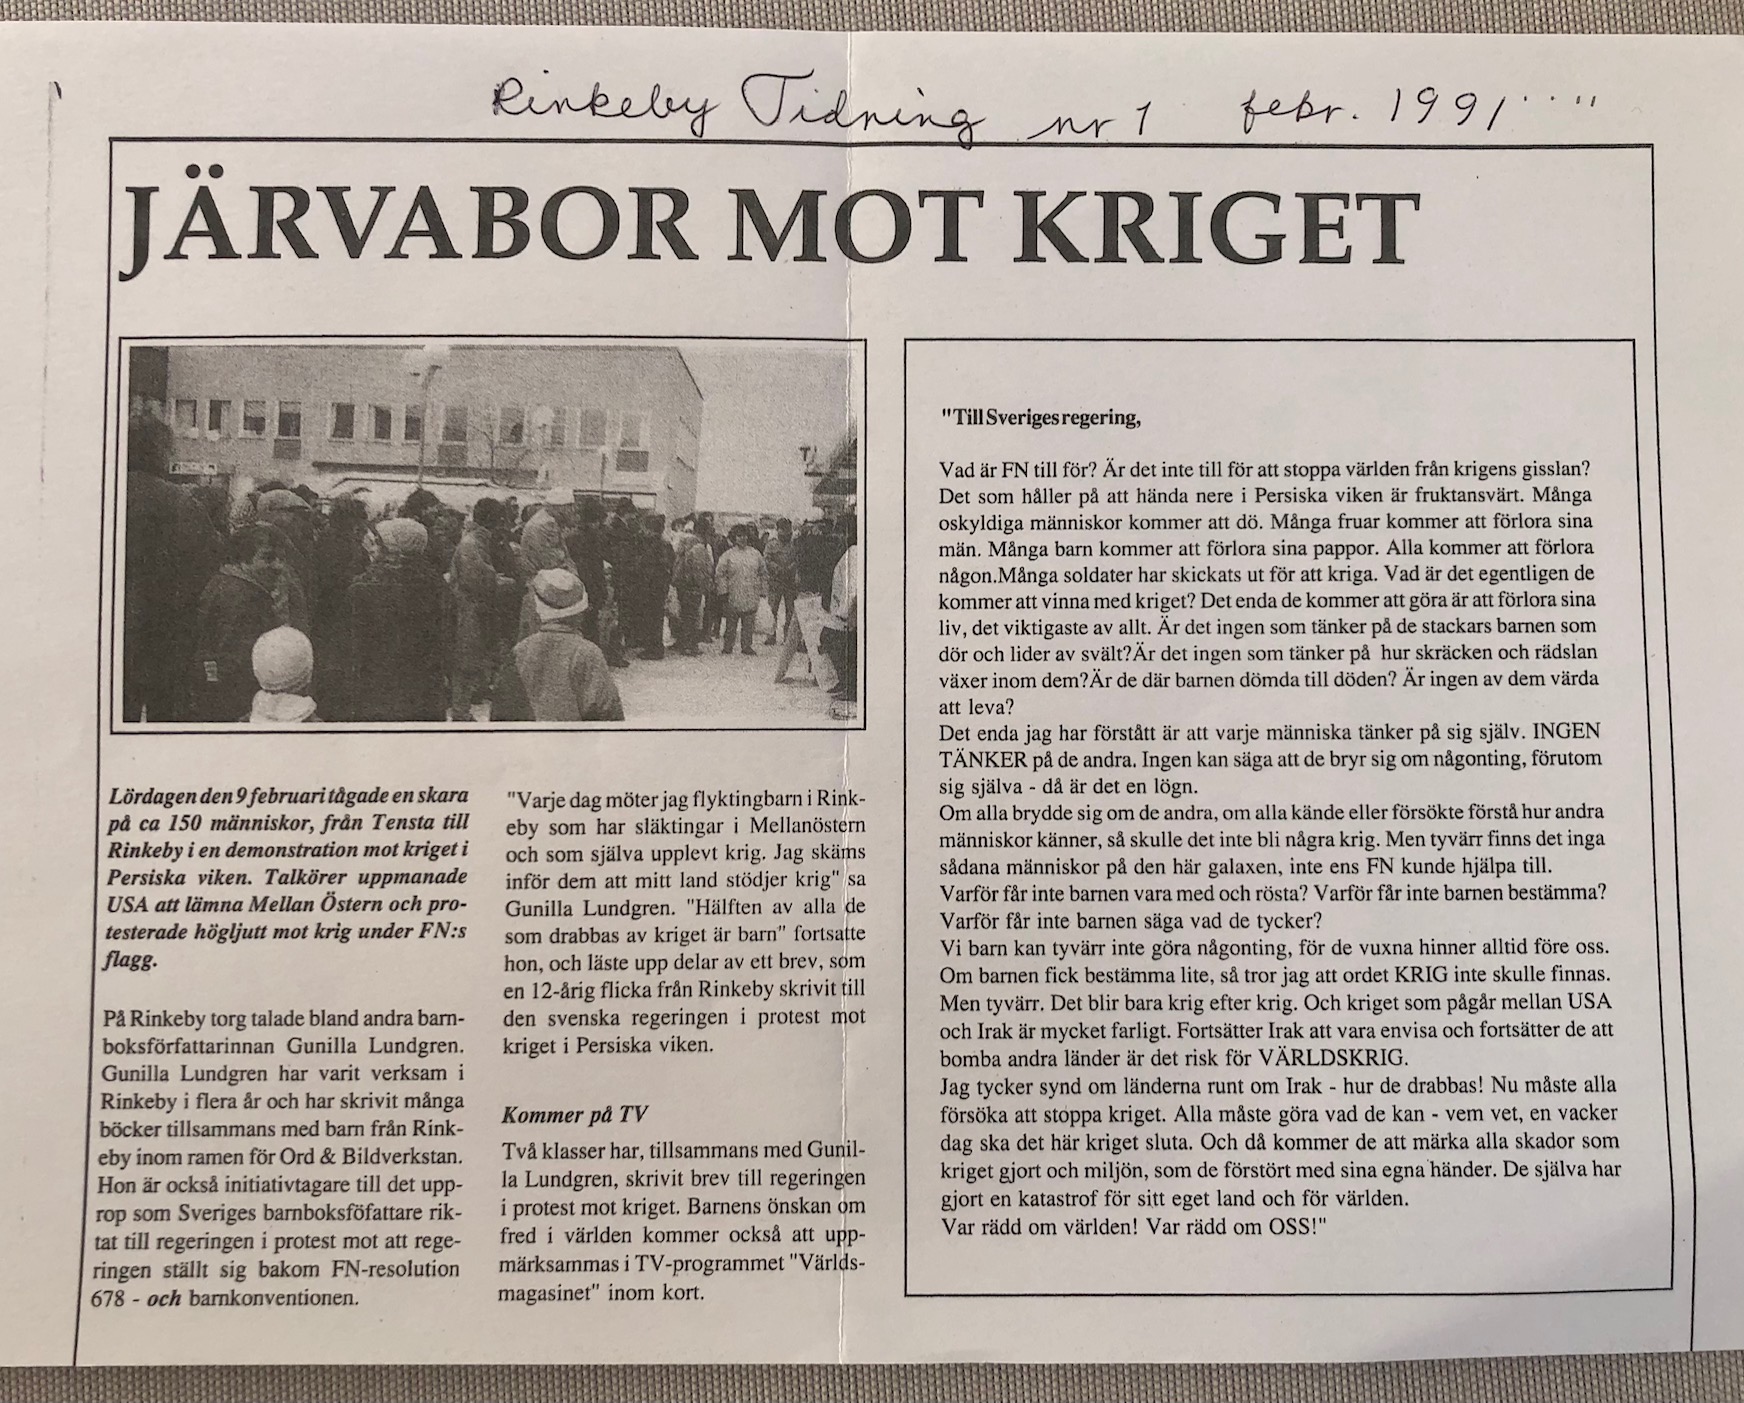 Klipp ur Rinkeby Tidning från 1991. Insändare mot kriget. Bild på demonstrationståg.